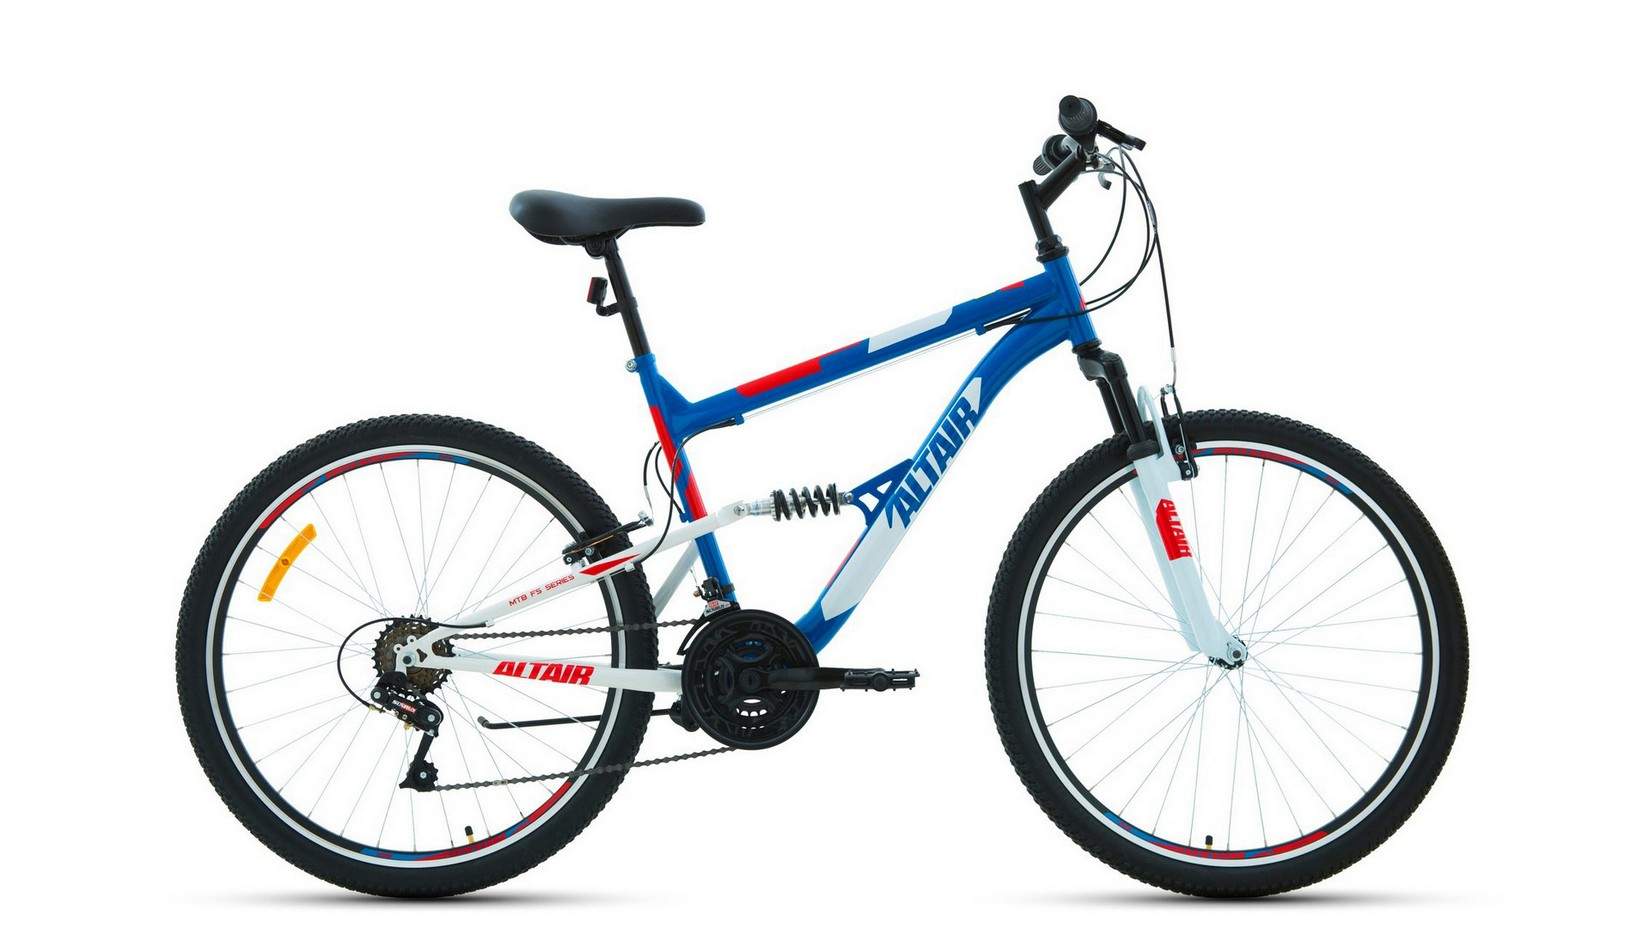 Велосипед Altair FS 1.0 2021 16" синий/красный - купить в Москве, цены на Мегамаркет | 100043582064